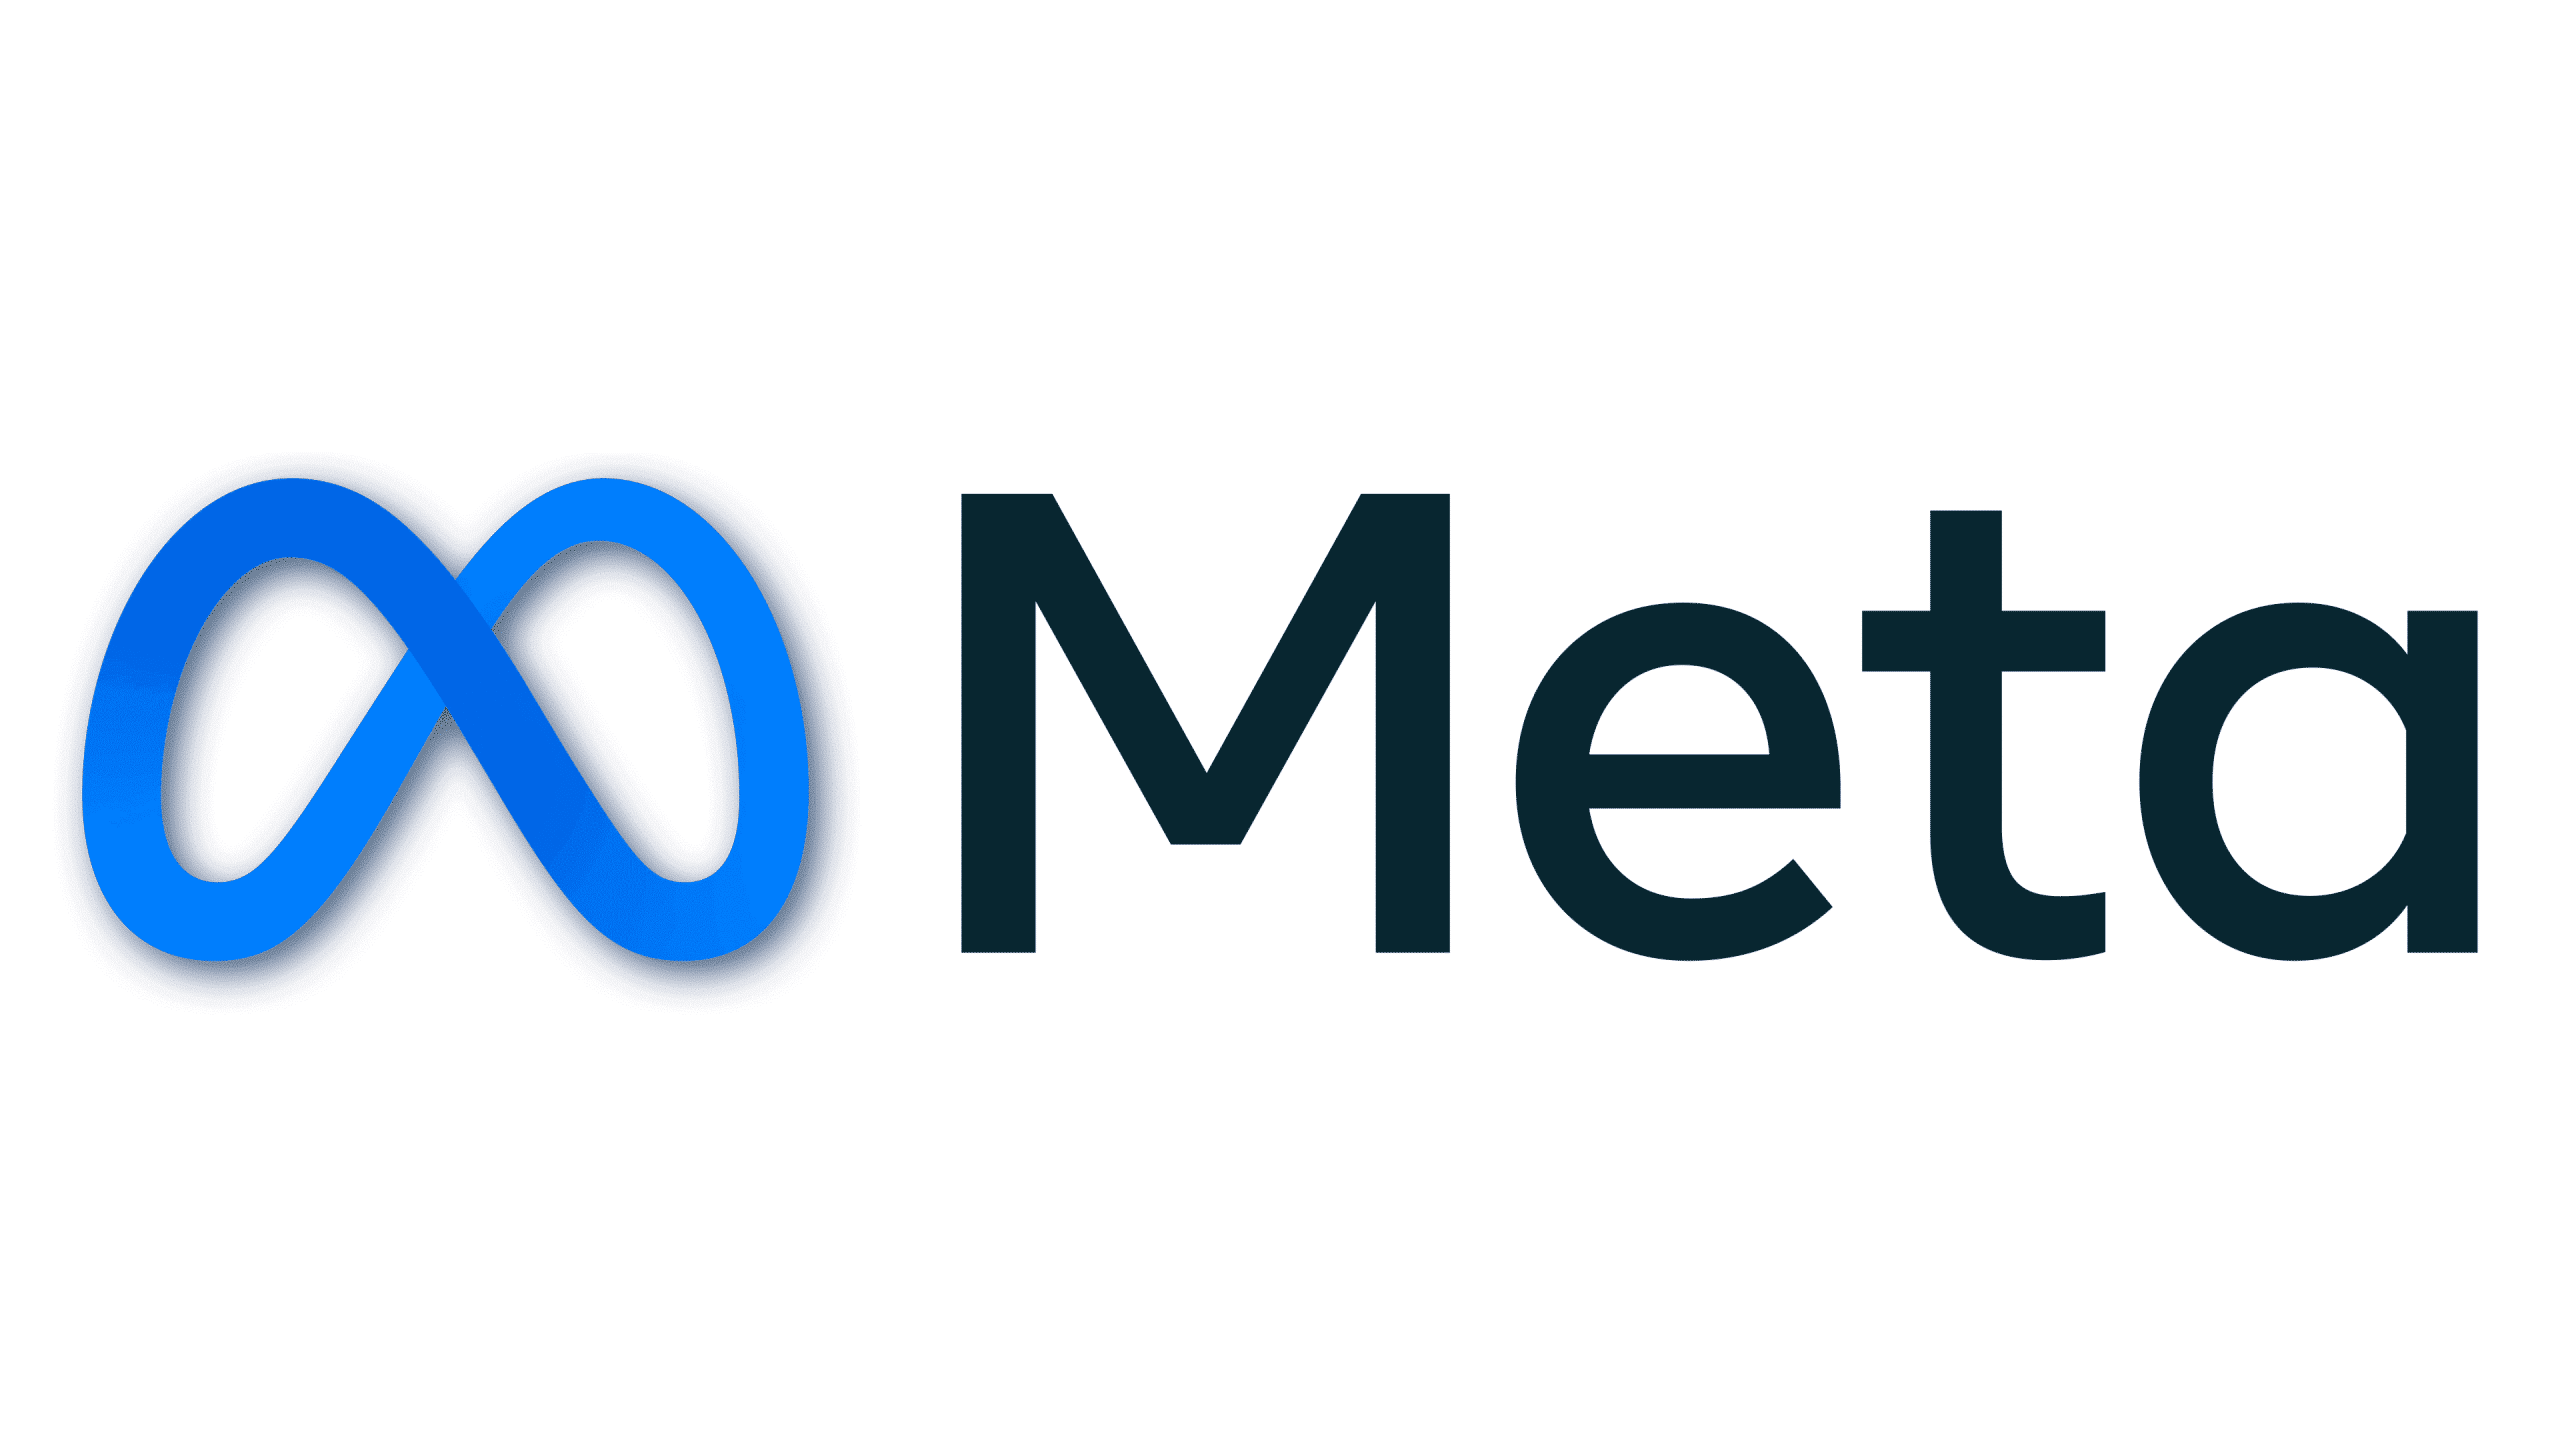 Meta-Logo.png